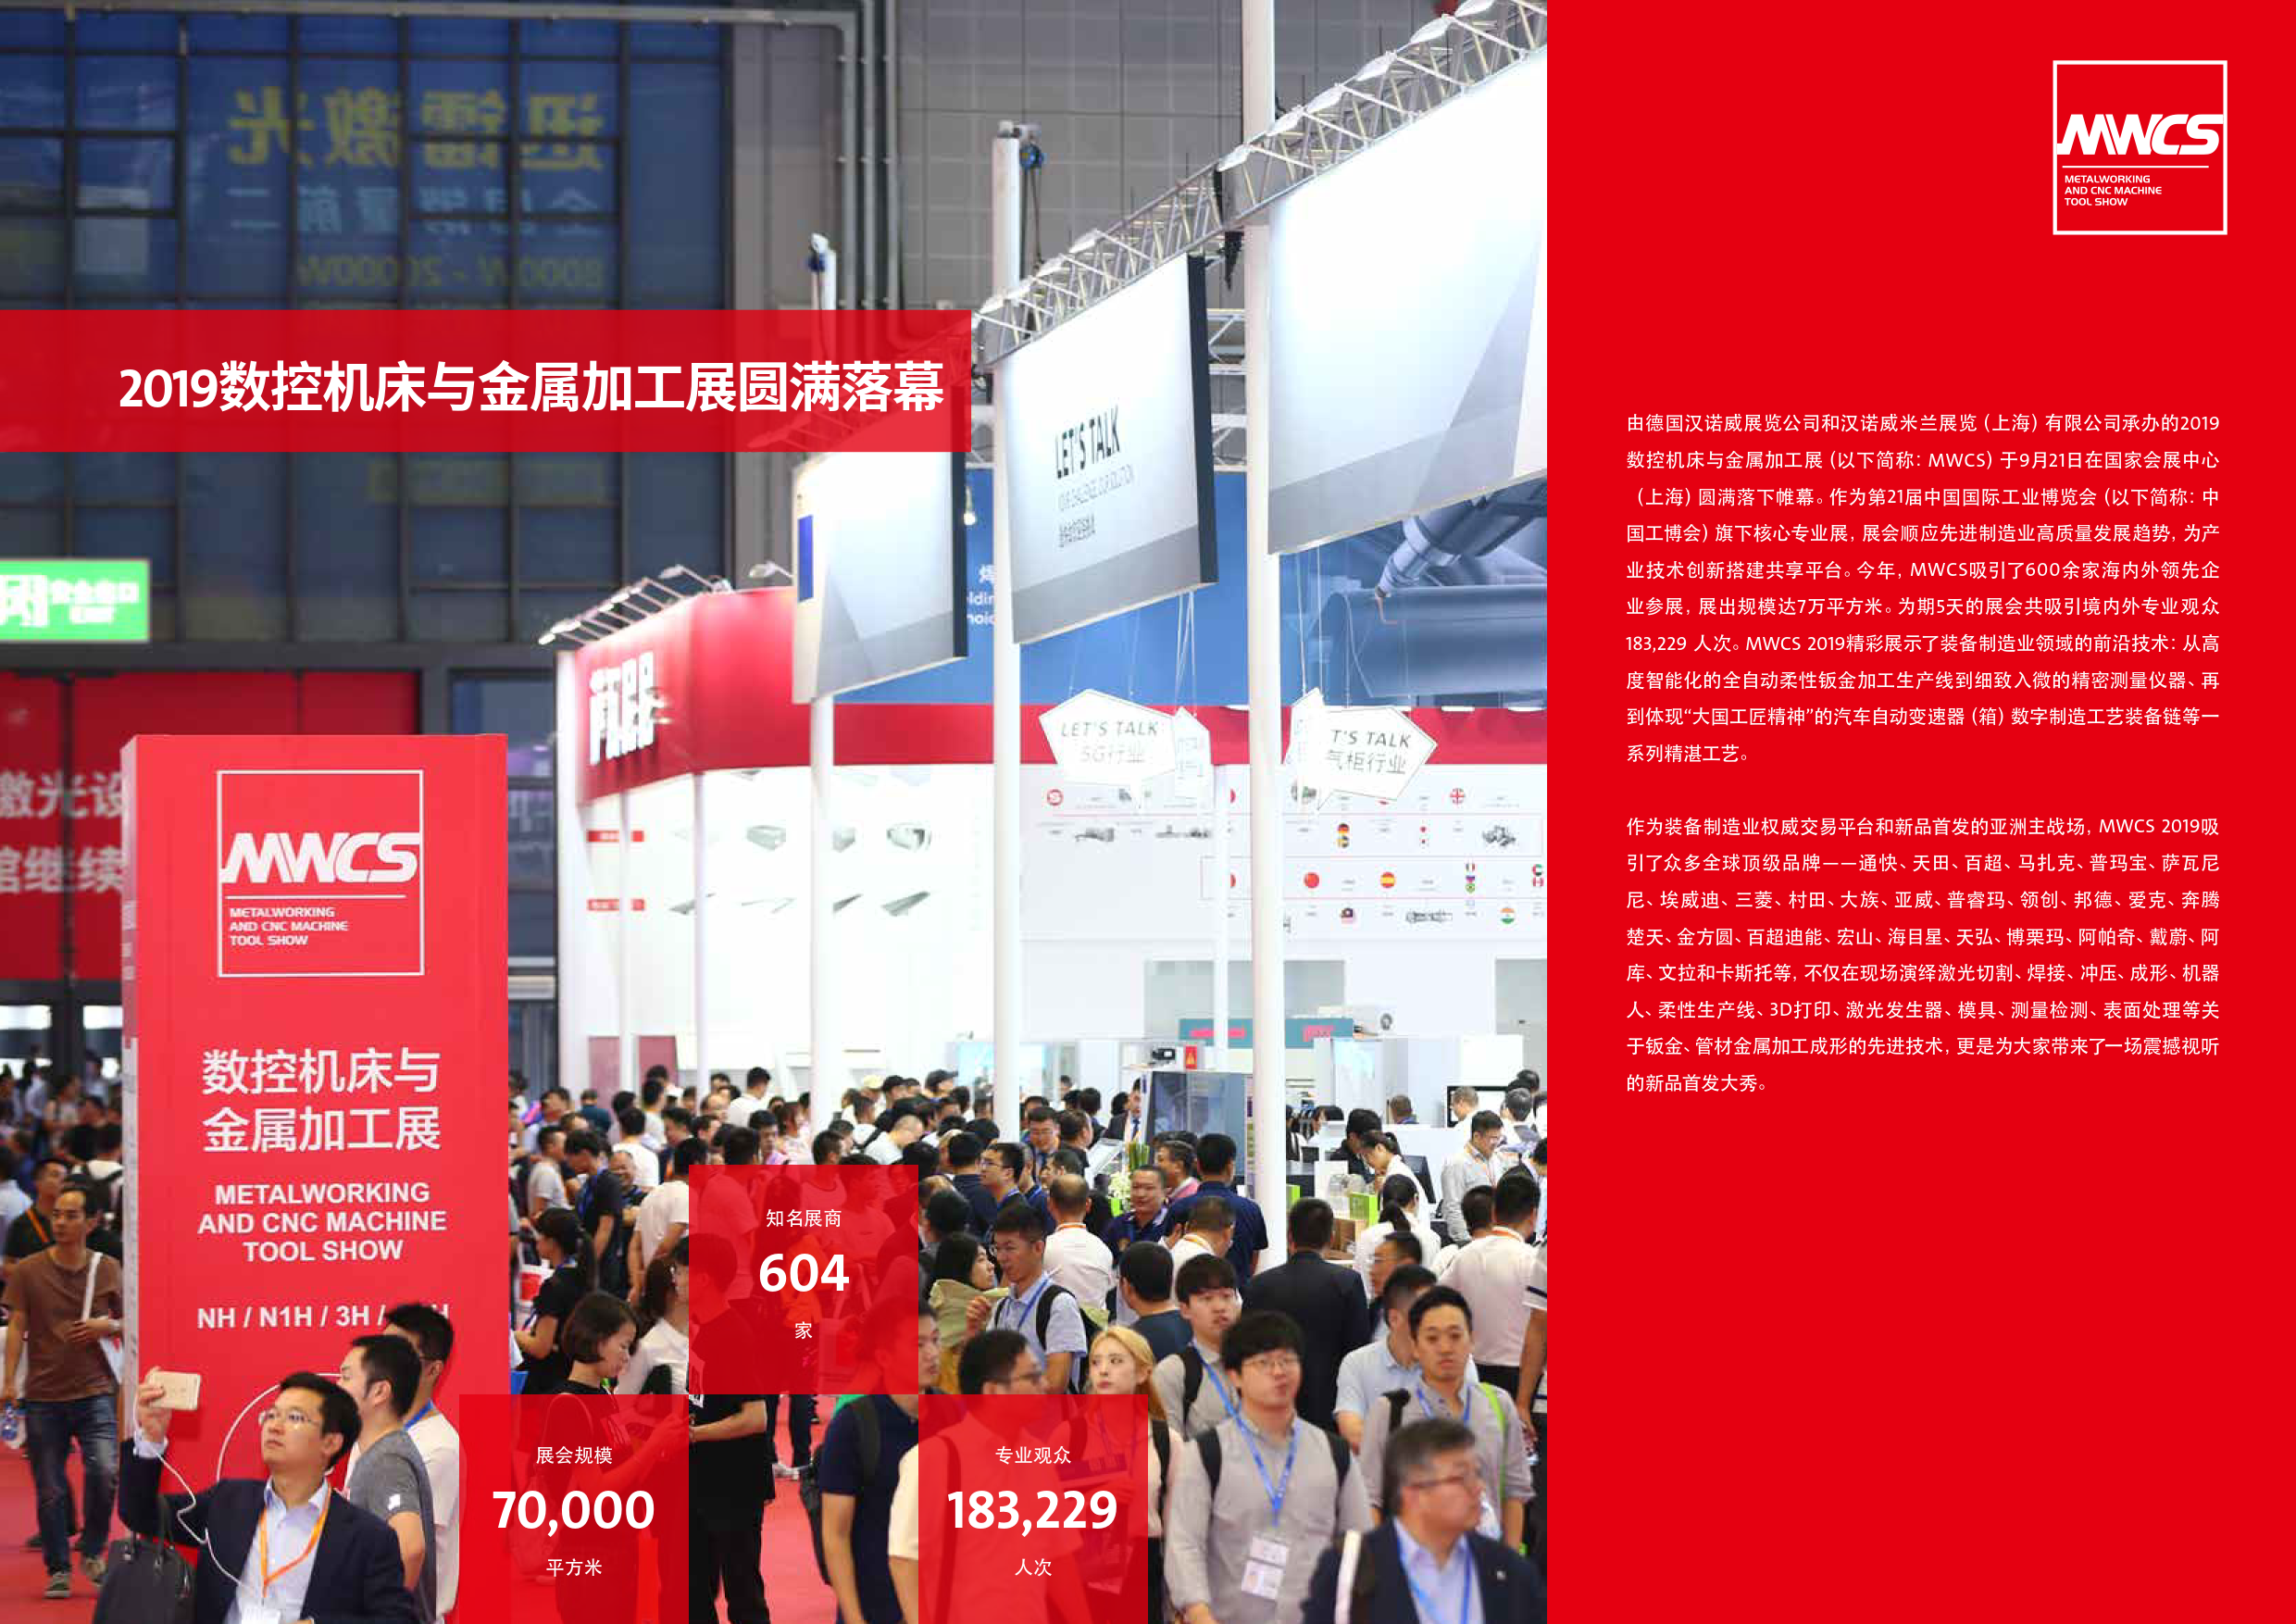 上海數控機床與金屬加工展覽會